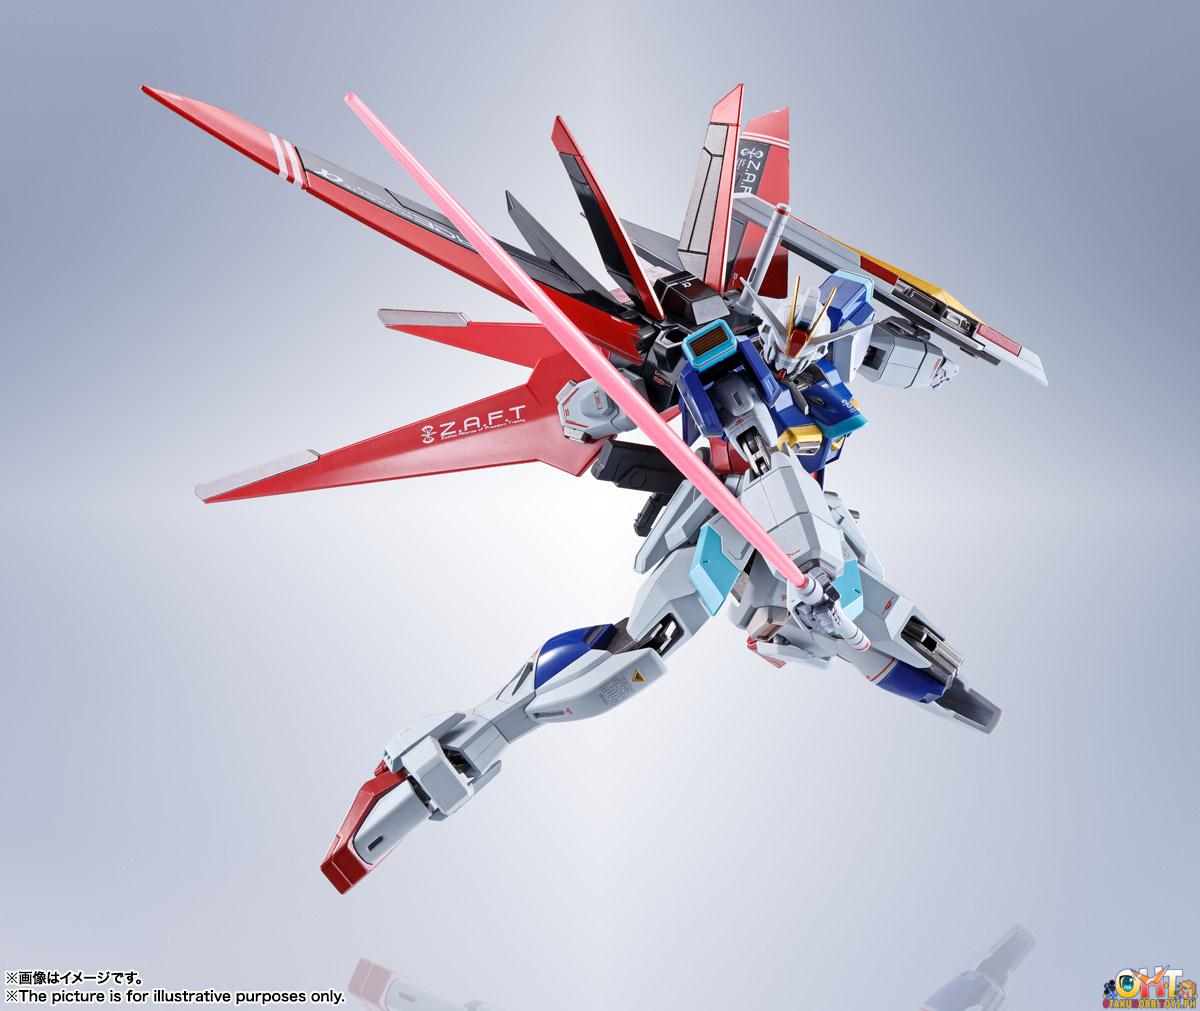 Metal Robot Damashii <SIDE MS> Force Impulse Gundam